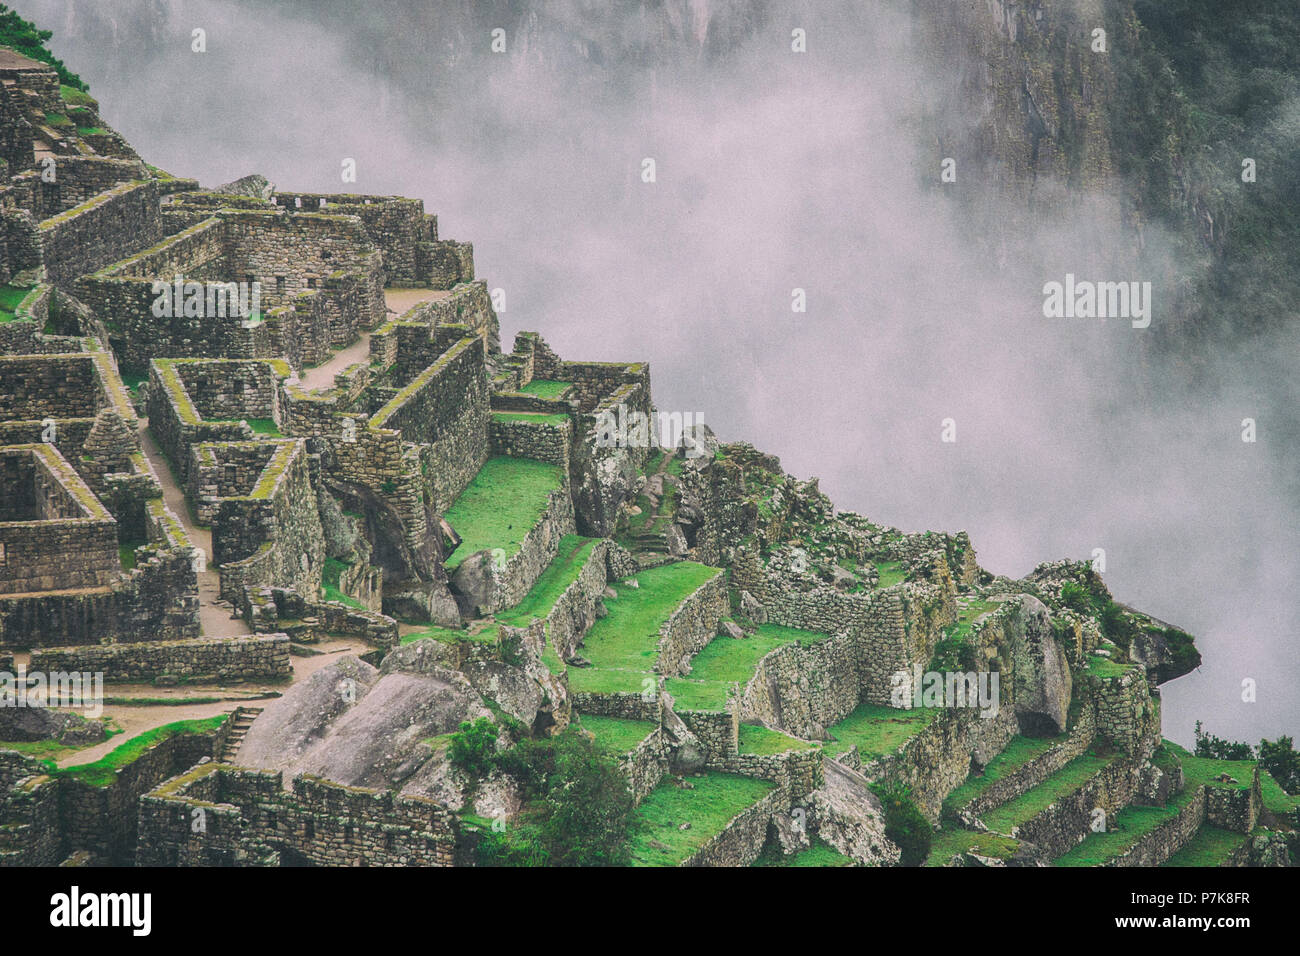 La segreta e misteriosa rovine di Machu Picchu coperti dalla nebbia con le alte montagne delle Ande sullo sfondo. Il fantastico premio di escursionismo Inca Foto Stock